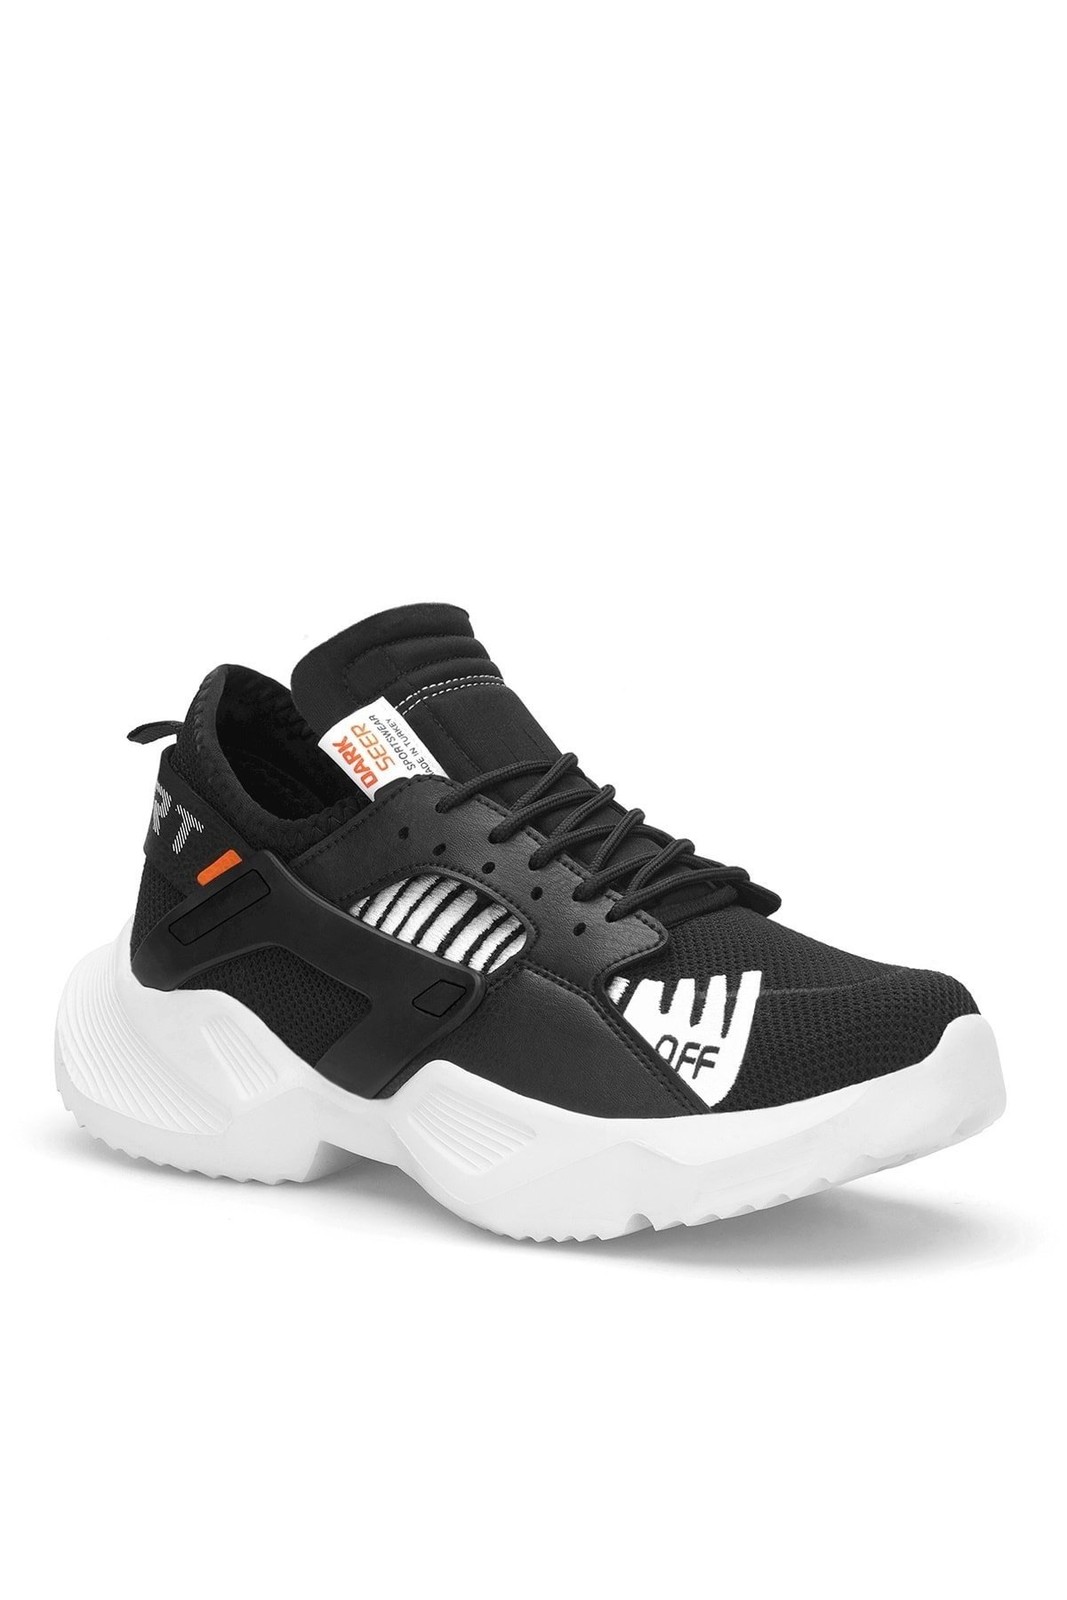 DARK SEER Black White Unisex Sneakers